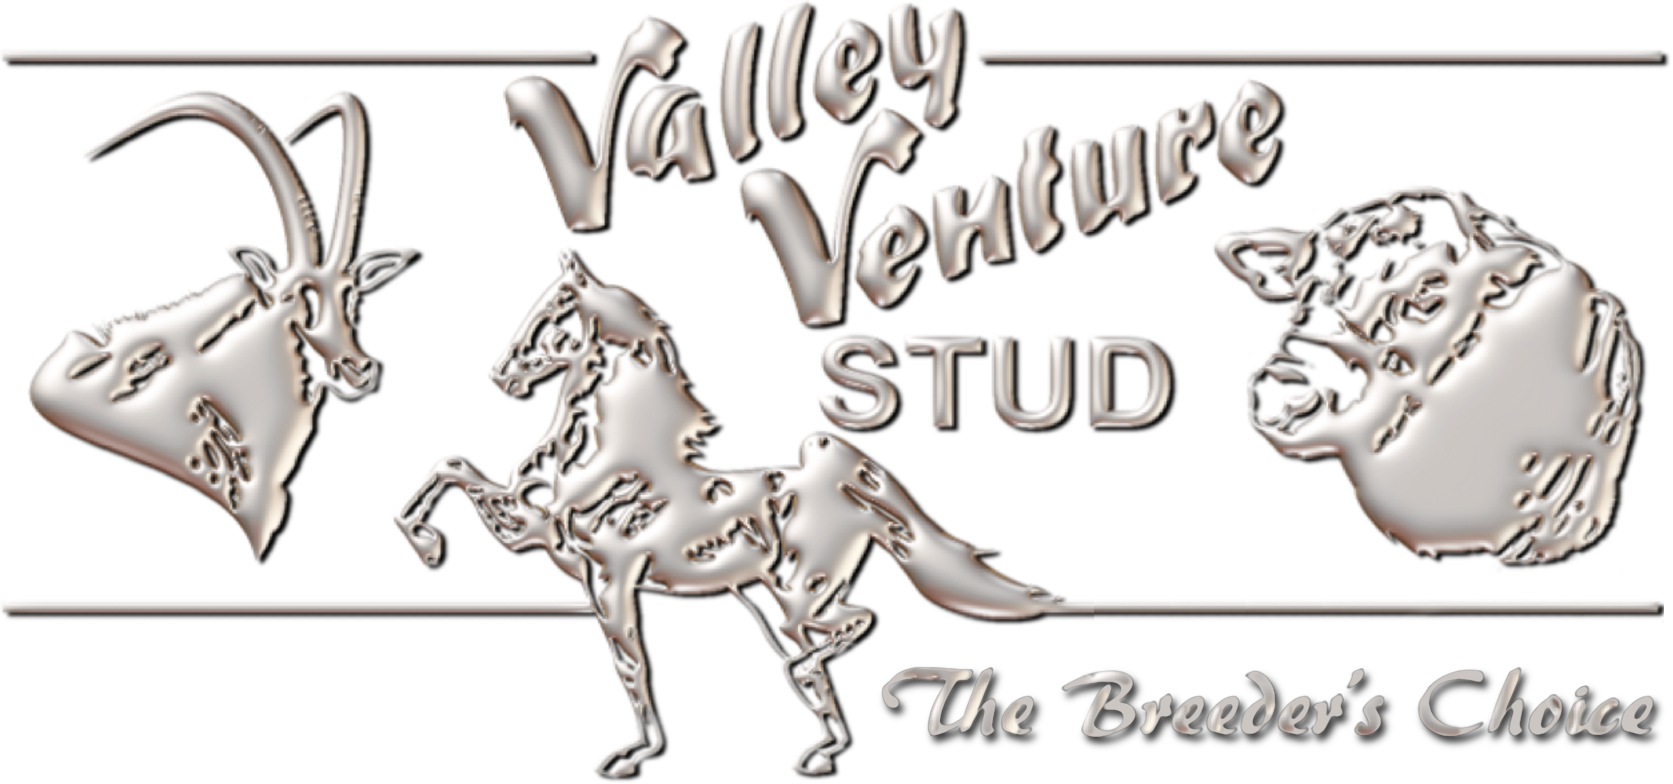 Valley Venture Stud